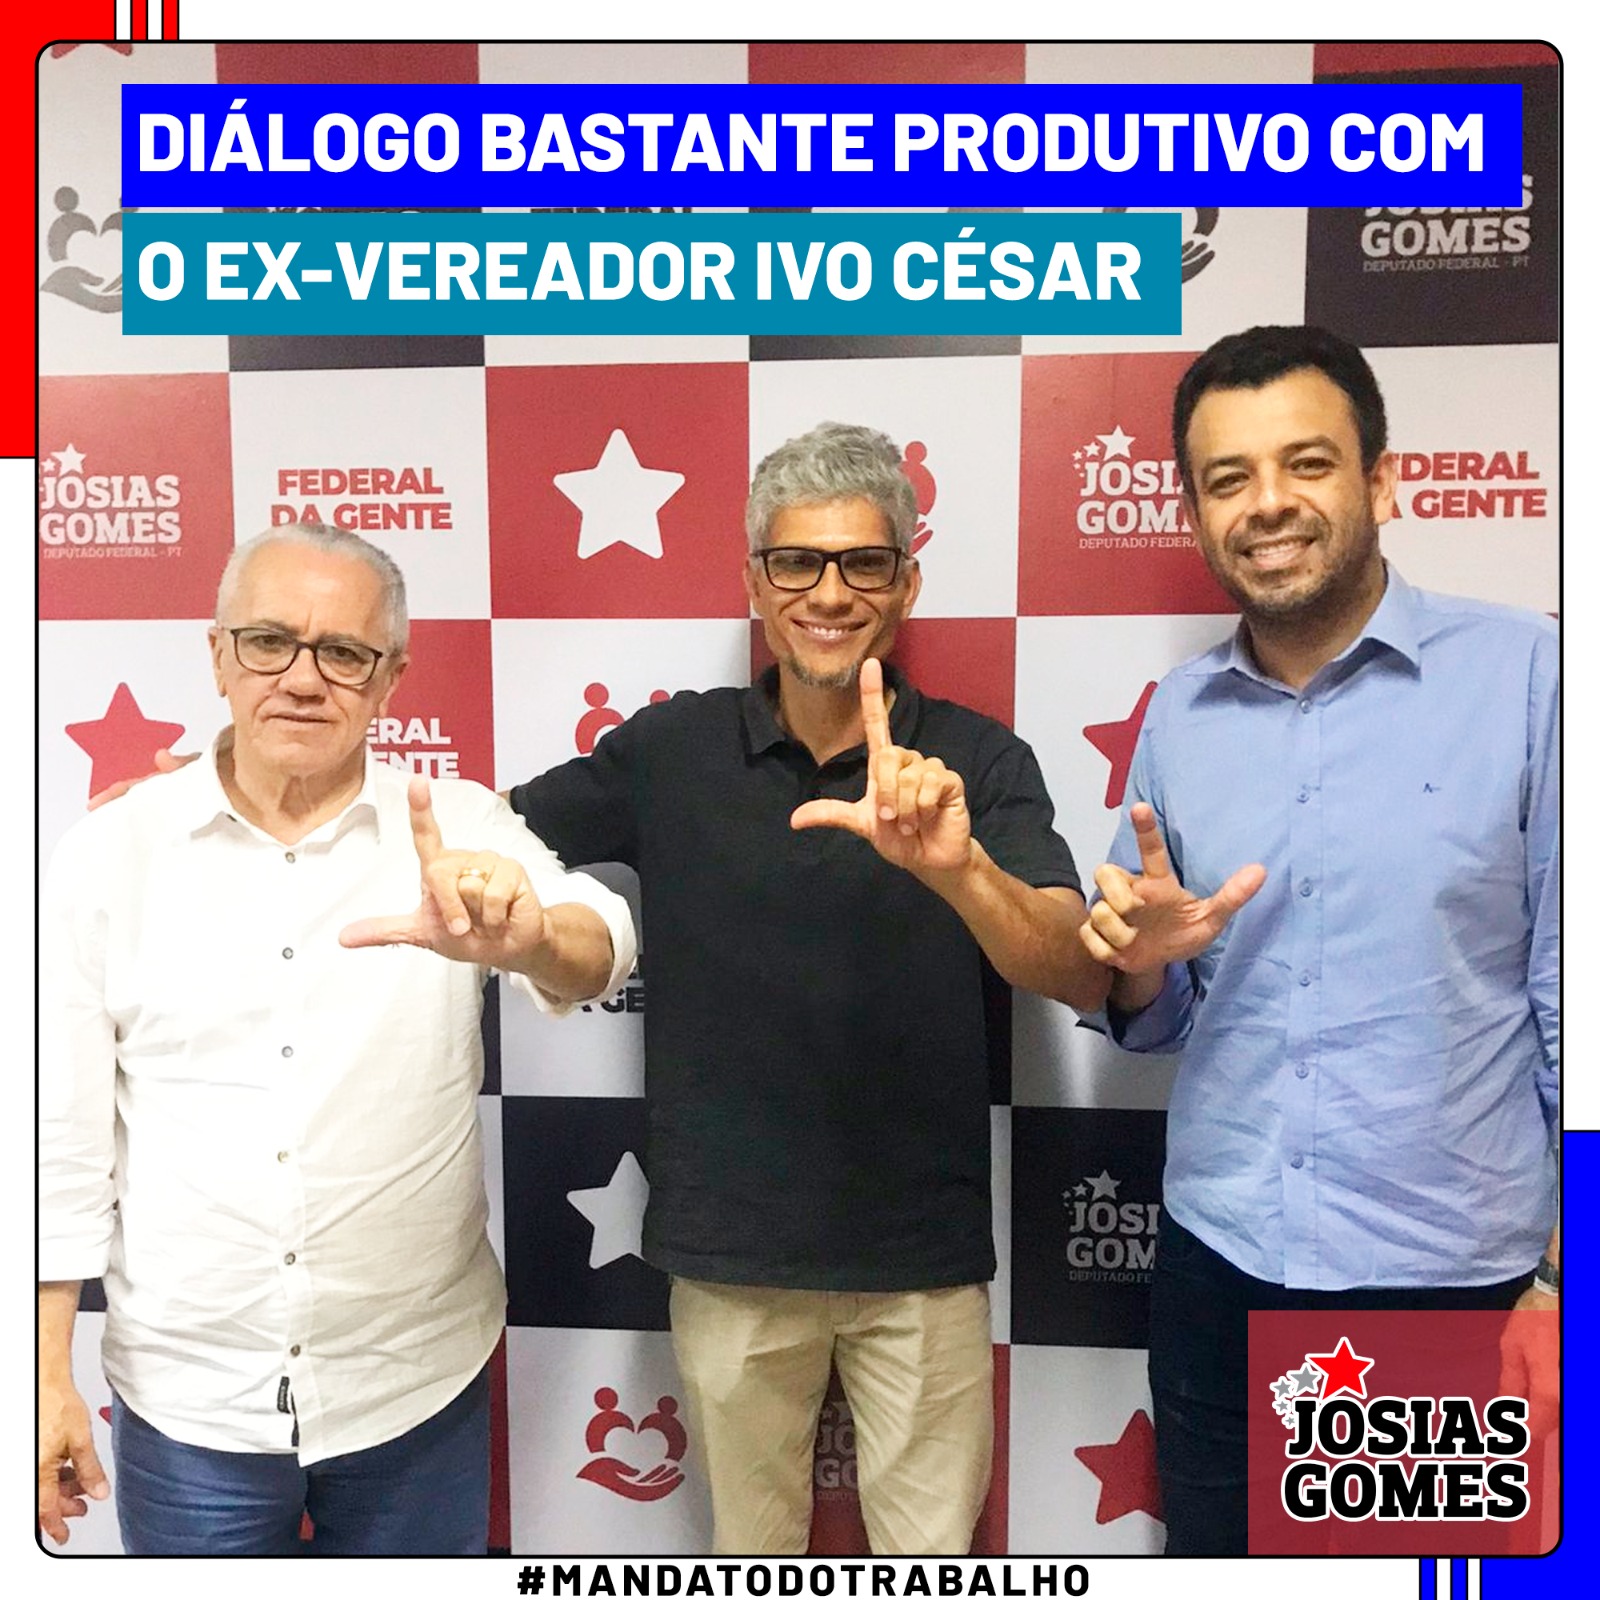 Josias Gomes E Ivo César, Juntos Por Entre Rios